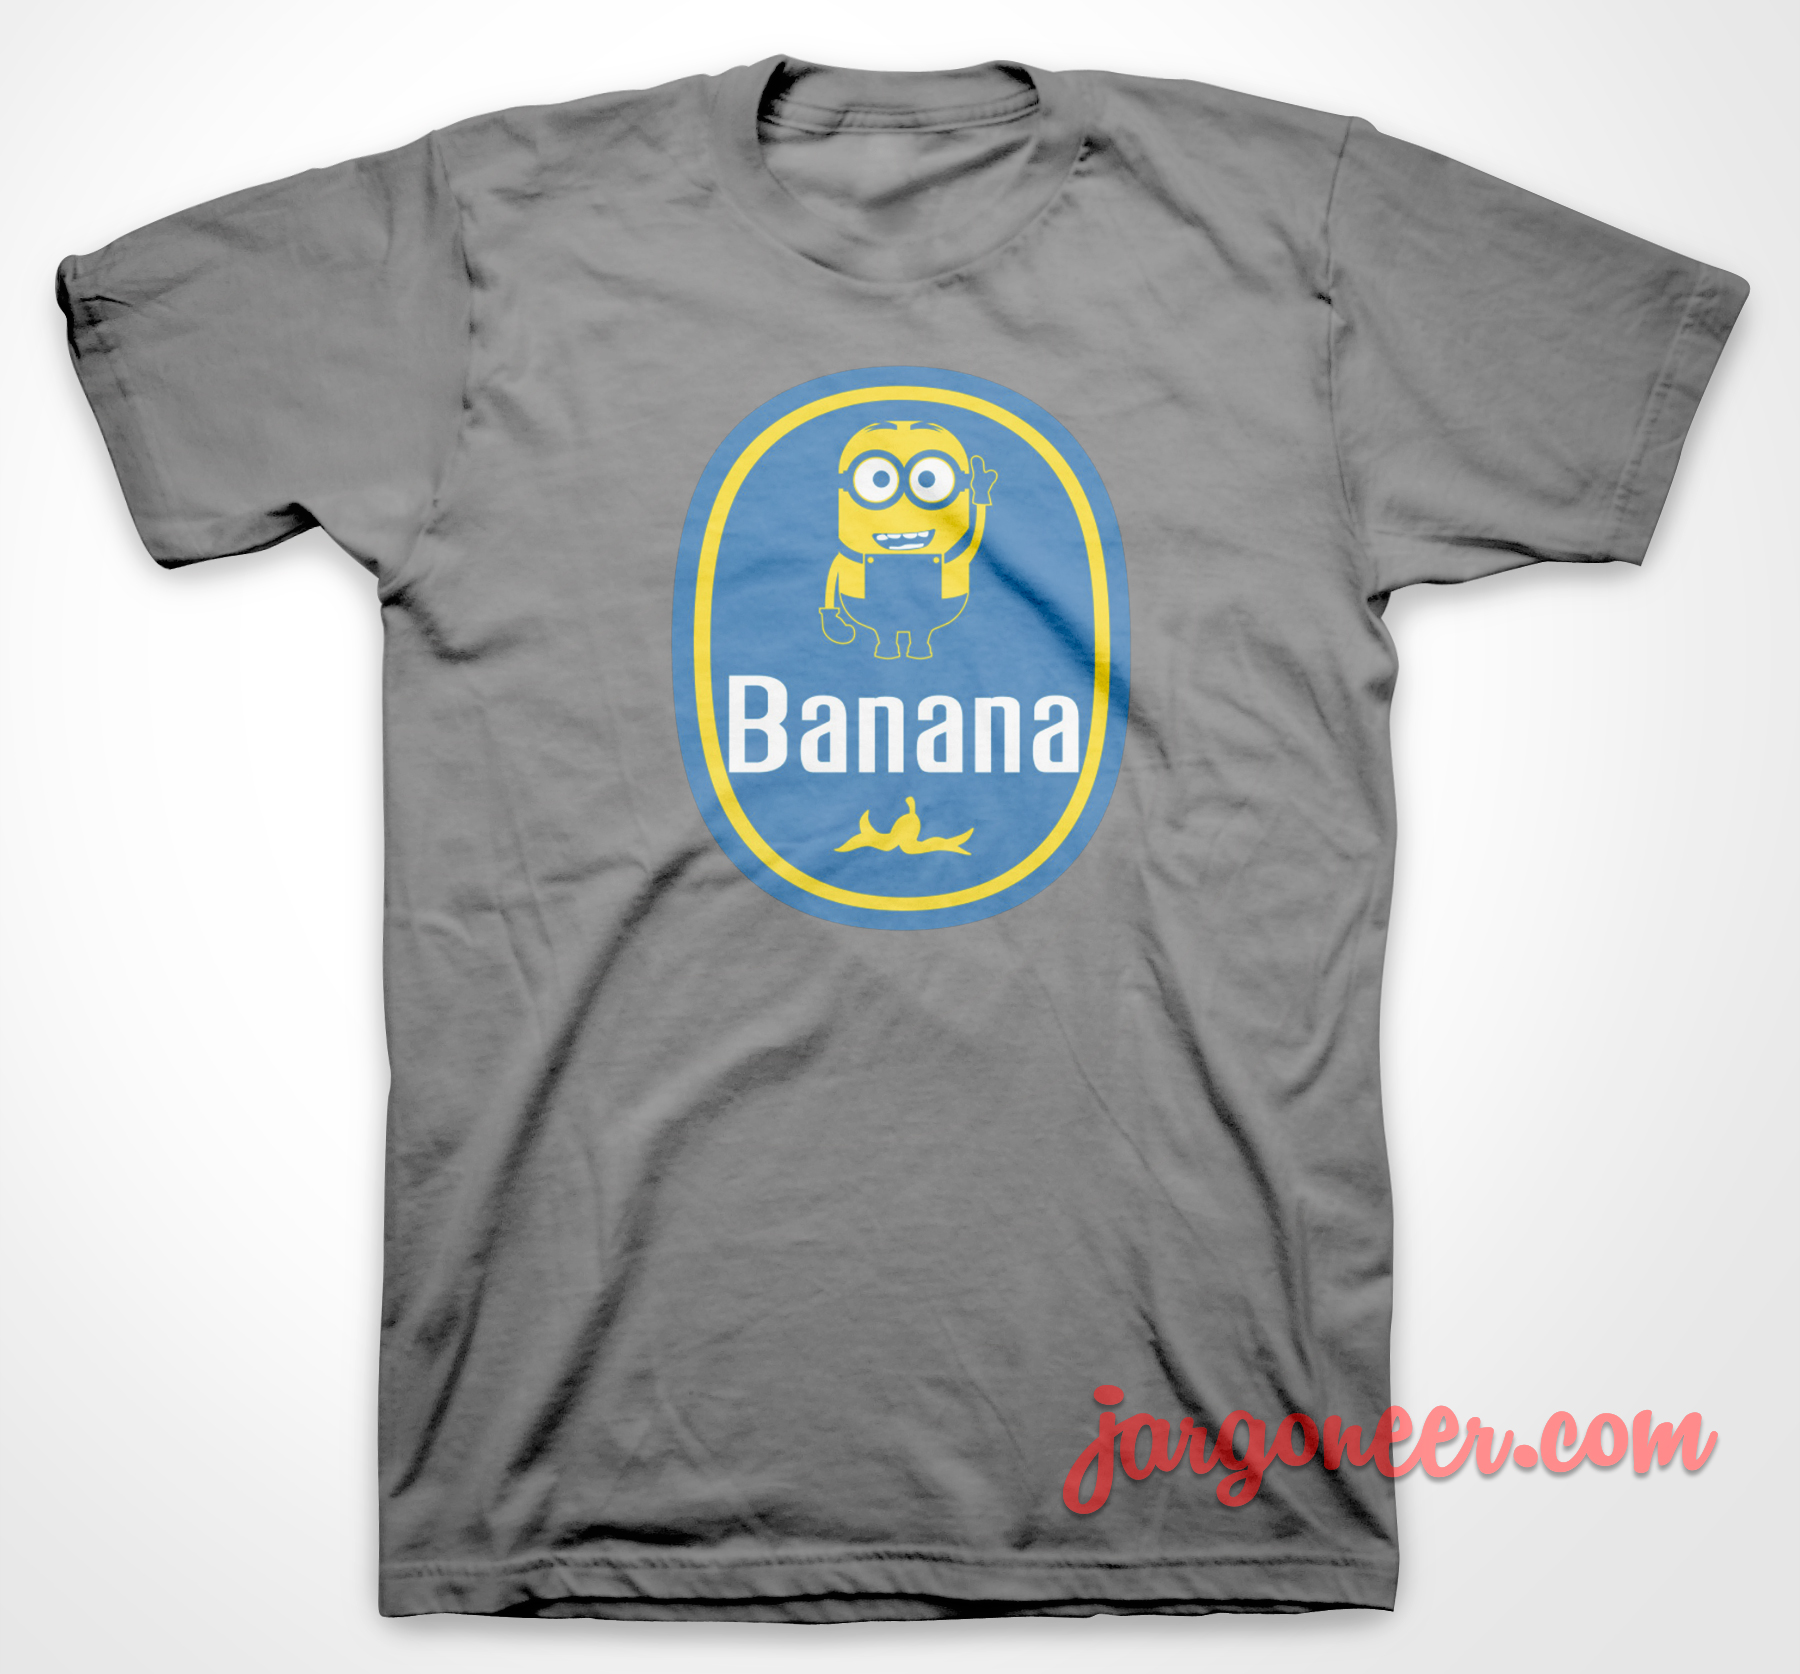 Banana - Shop Unique Graphic Cool Shirt Designs